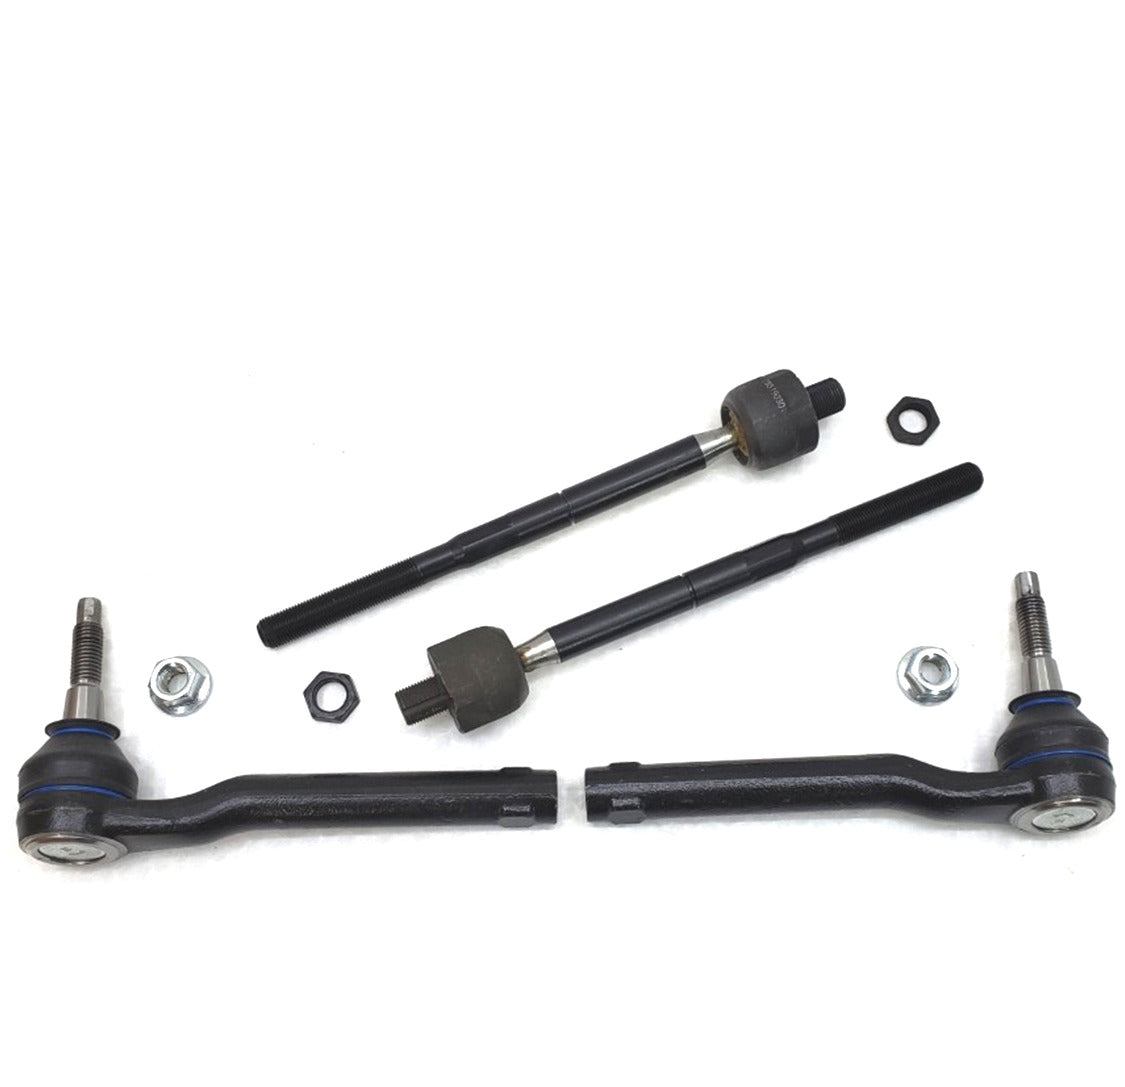 Lifetime Inner & Outer Tie Rod Steering Kit for 2010-2014 Ford F150 SVT Raptor 6.2L V8 4x4